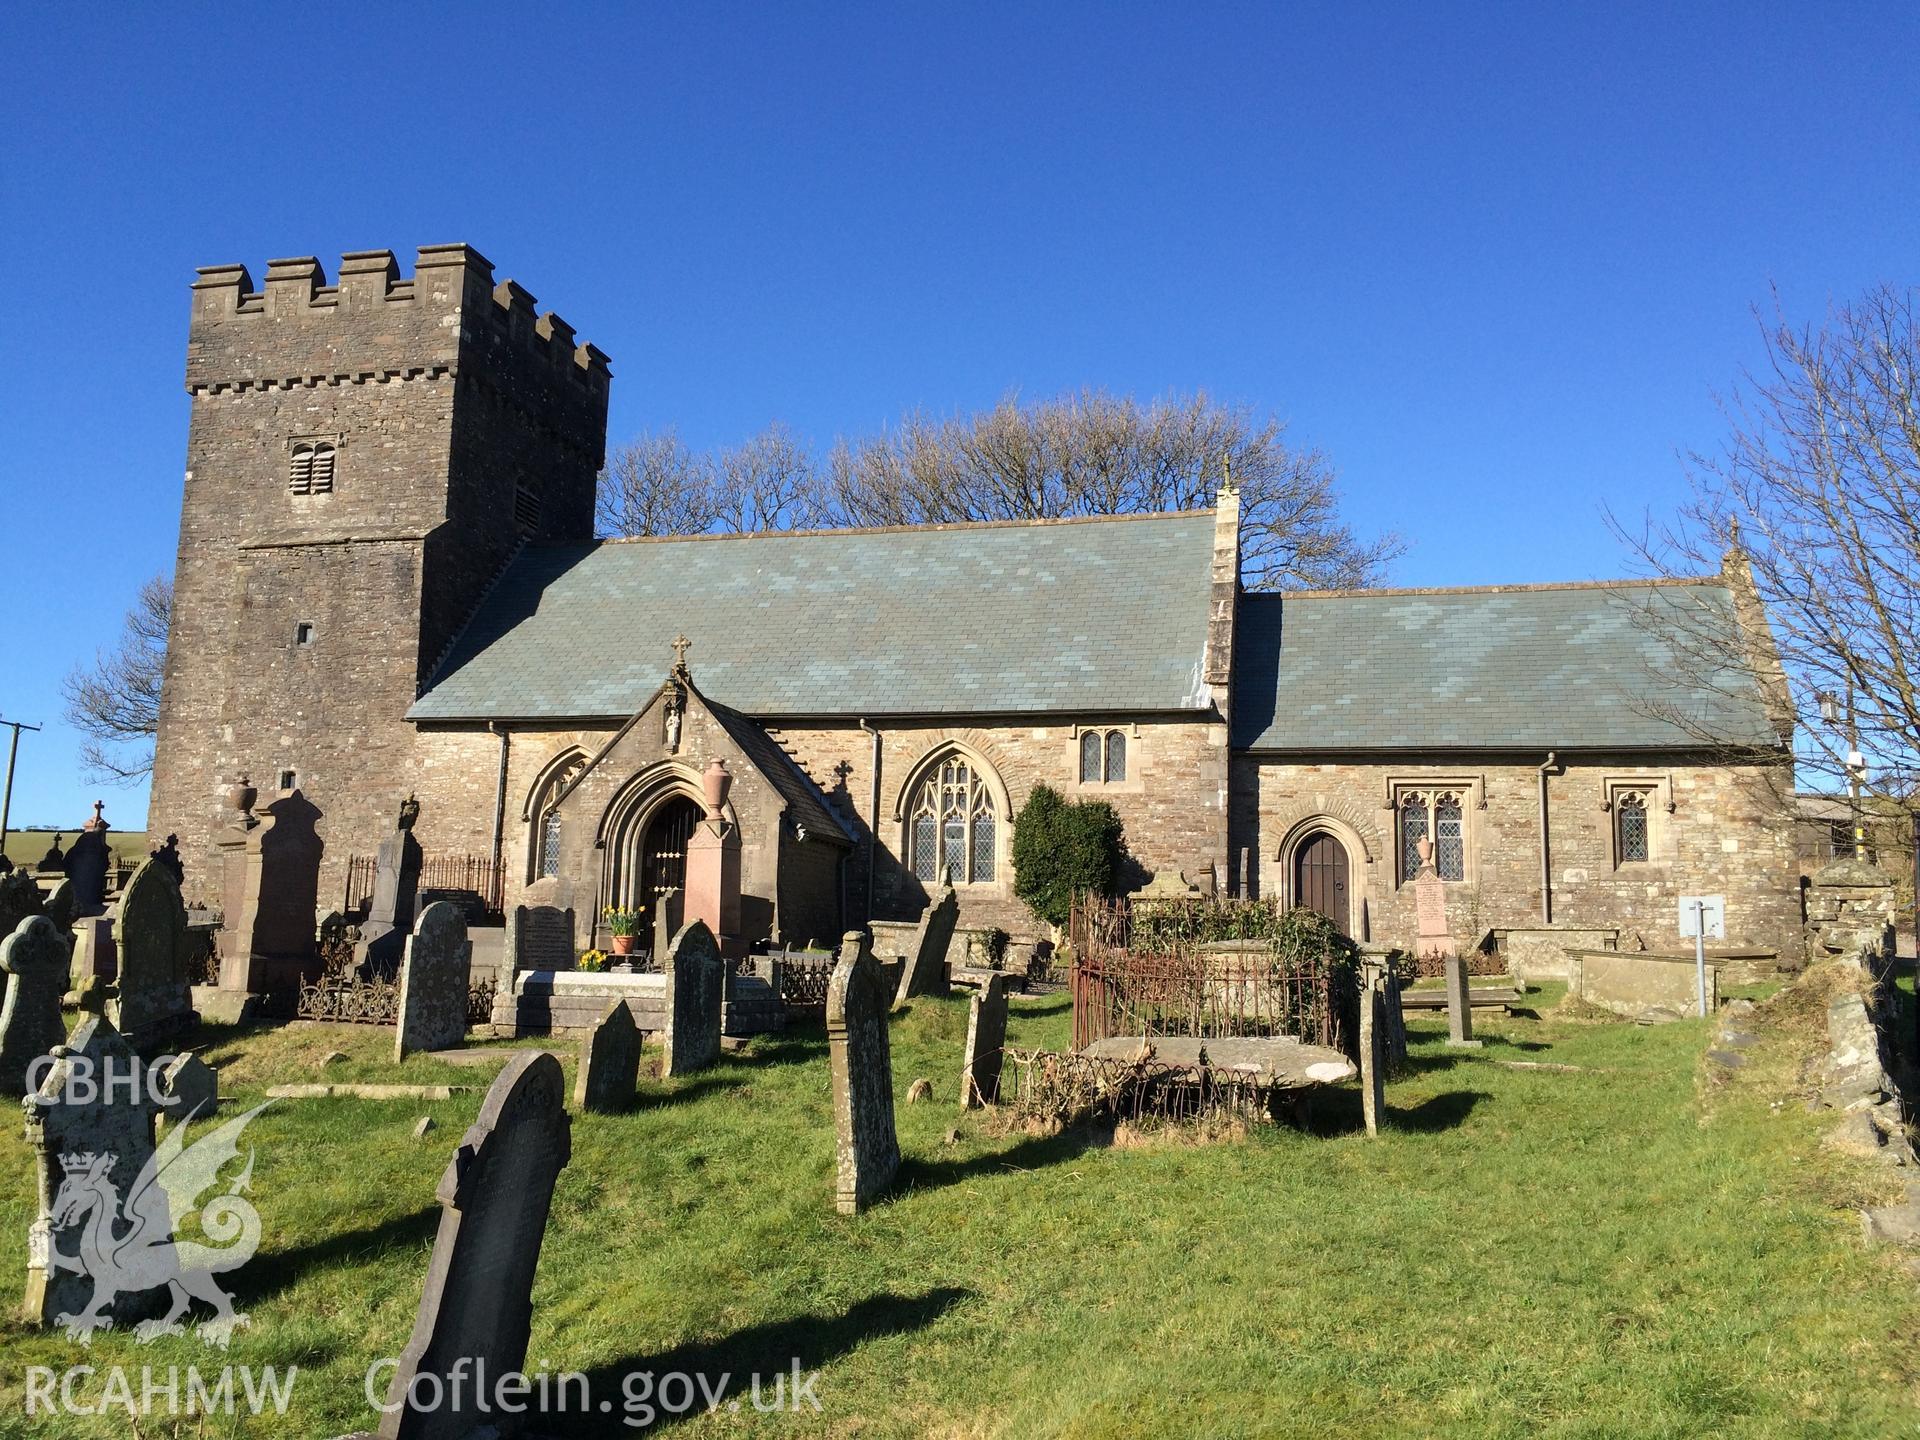 Colour photo showing Llangeinor Church, taken by Paul R. Davis, 24th February 2016.